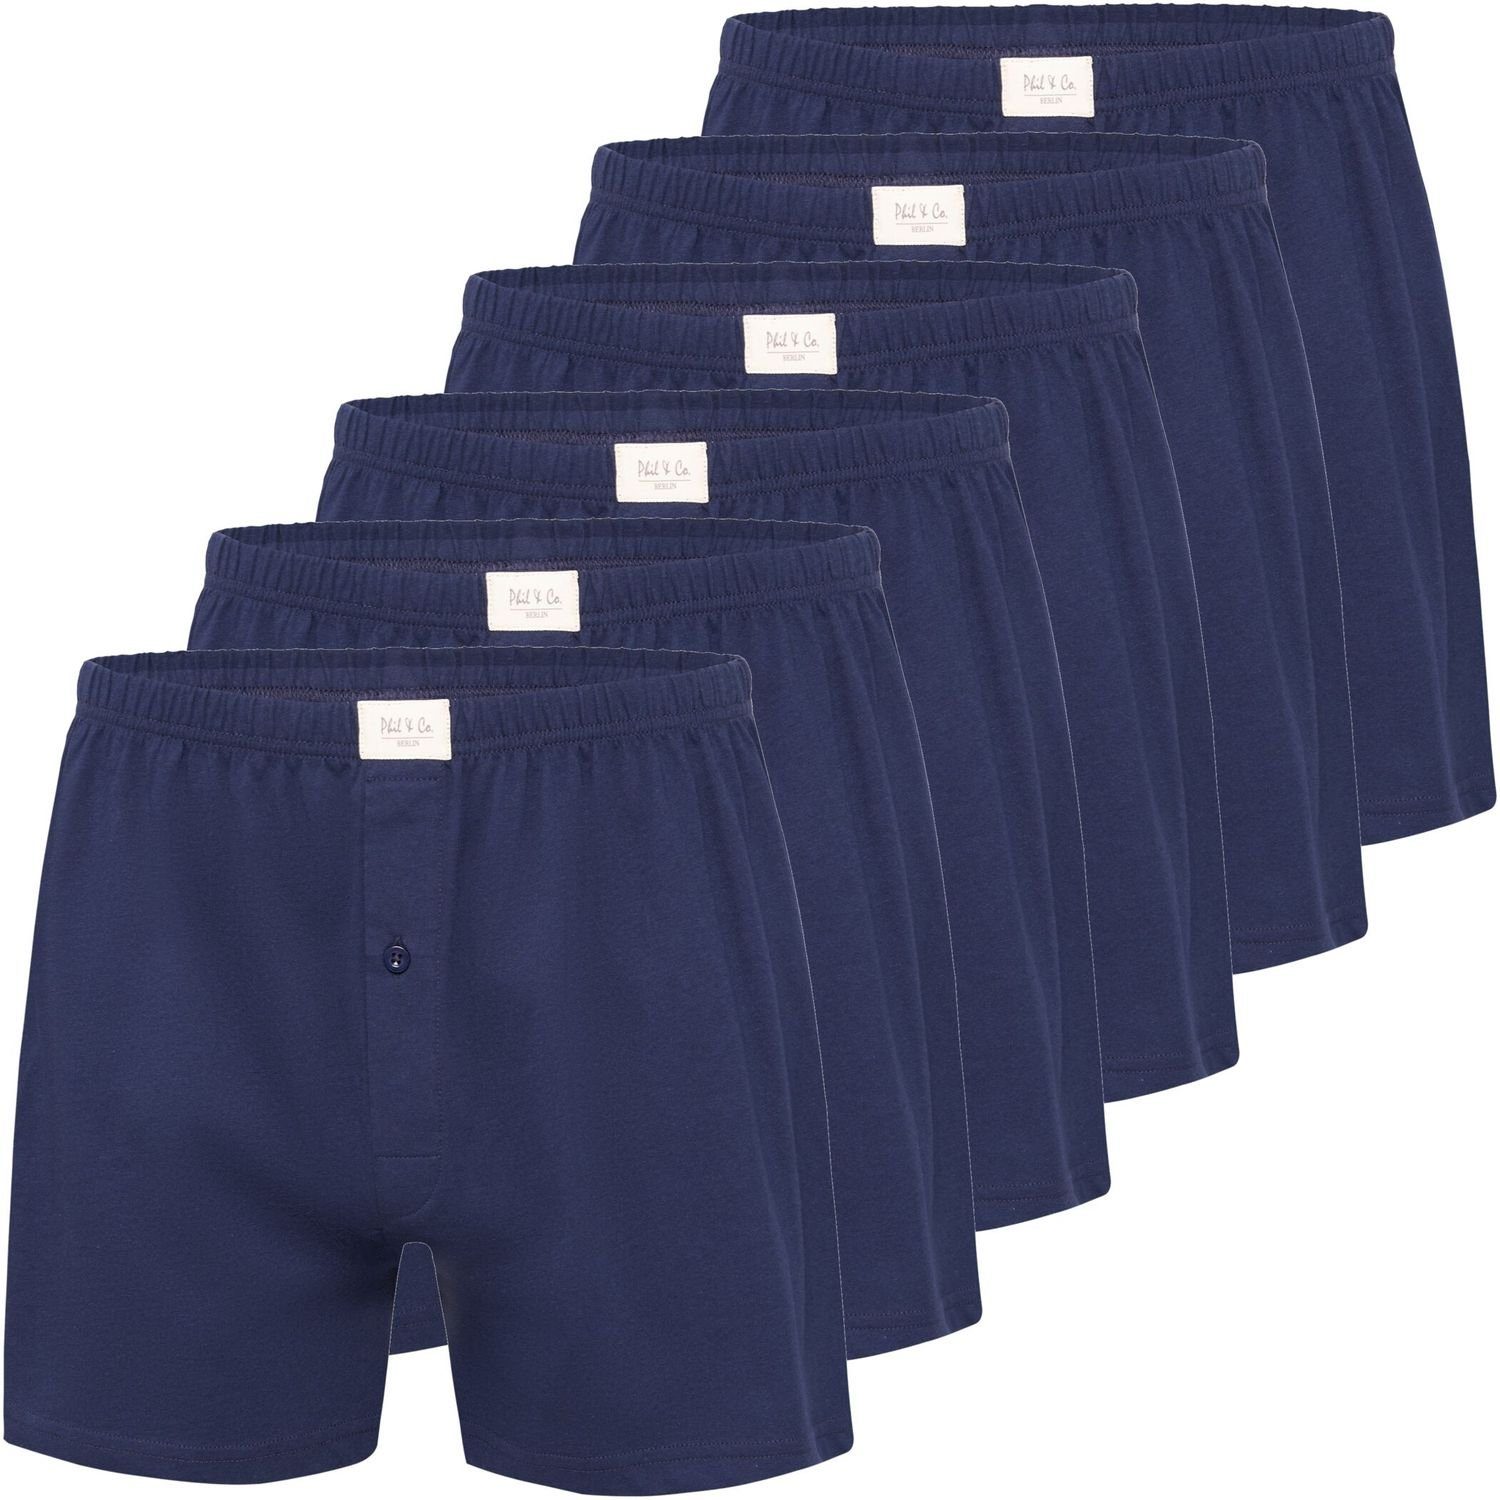 Phil & Co. Boxershorts 6 Stück Phil & Co Jersey Shorts Boxershorts Pant Unterhosen Herren große Größen schwarz oder blau M - 5XL (6-St) marine | Boxershorts